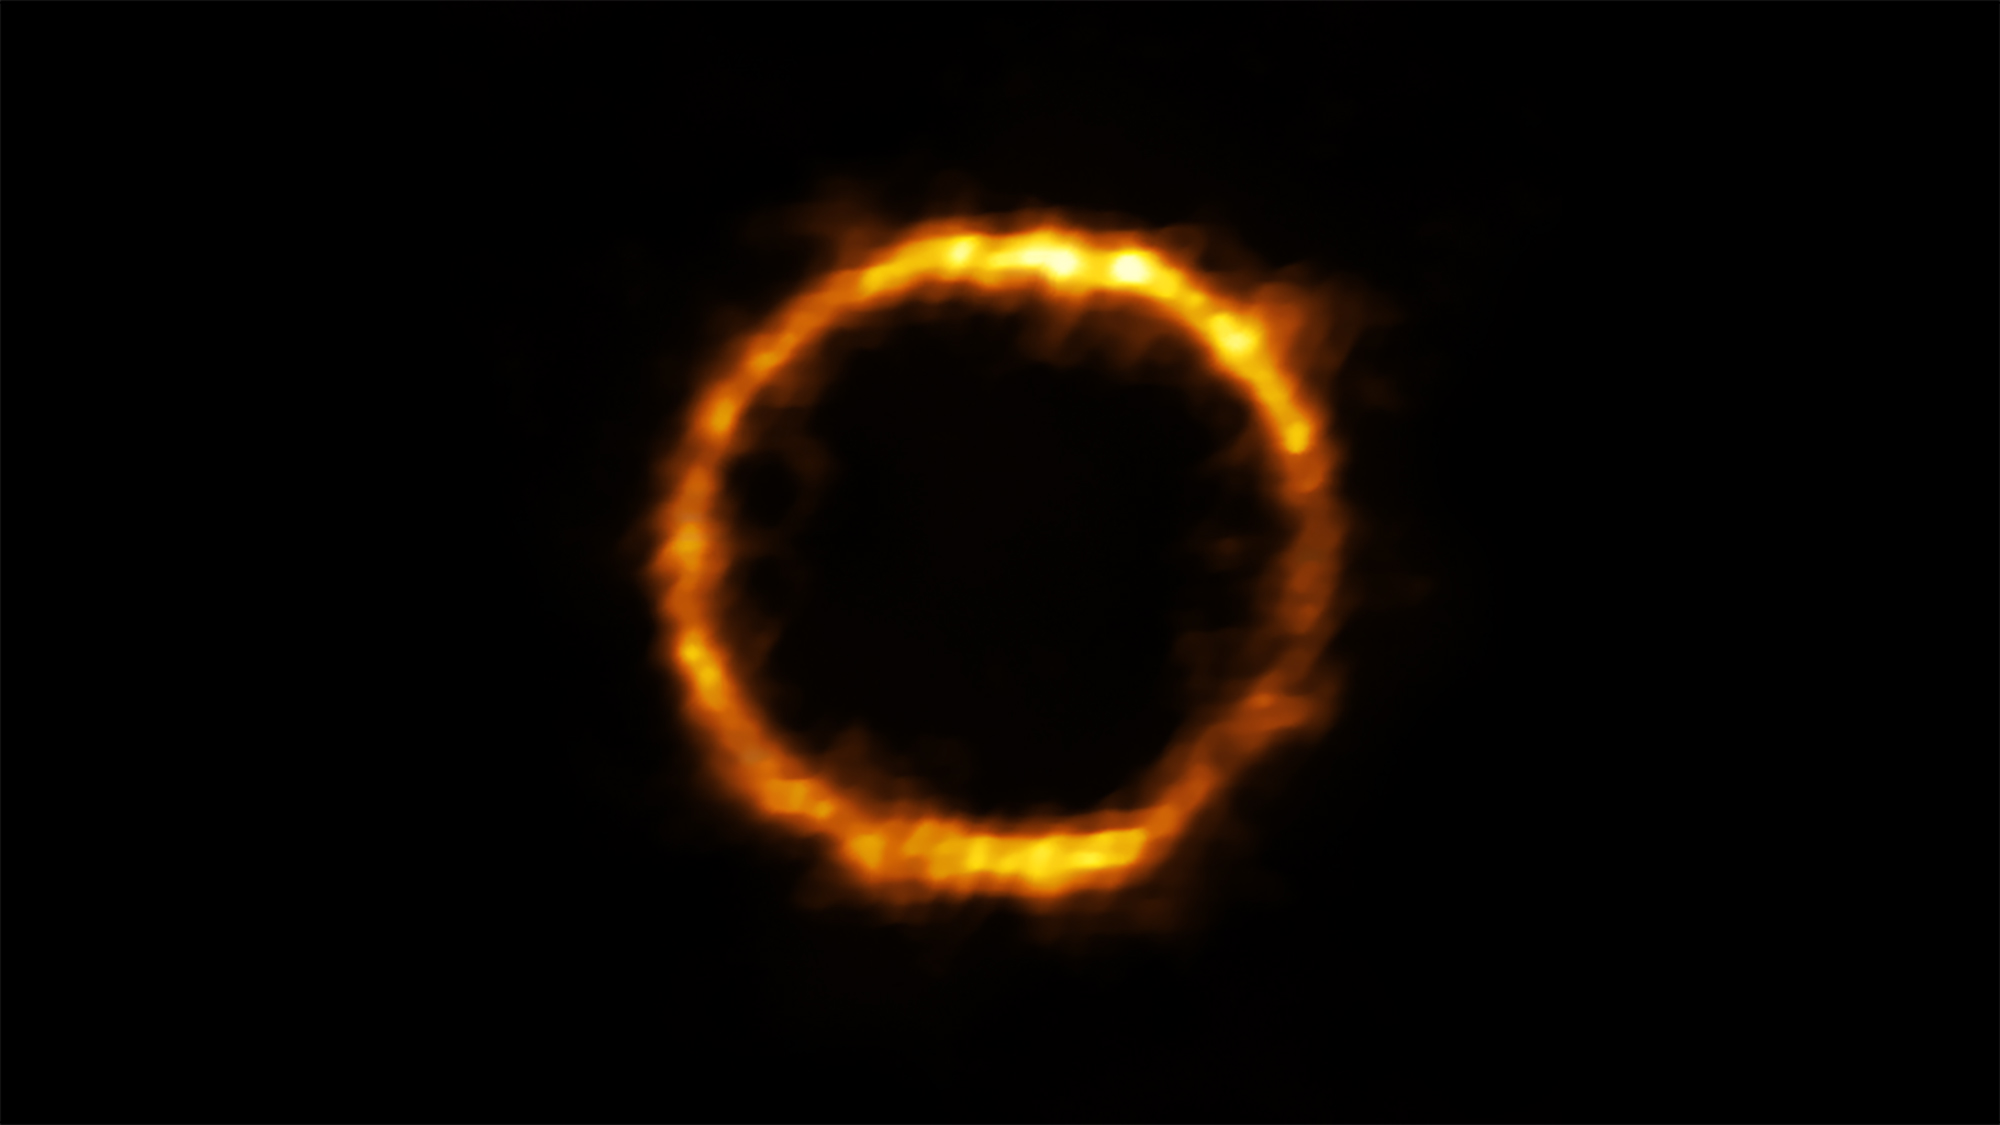 Grâce à Alma, les astronomes ont découvert une galaxie extrêmement lointaine qui ressemble étonnamment à notre Voie lactée. Baptisée SPT0418-47, la galaxie est amplifiée gravitationnellement par une galaxie voisine et nous apparaît sous la forme d’un anneau de lumière quasi parfait sur fond de ciel noir. © Alma (ESO, NAOJ, NRAO), Rizzo et al.